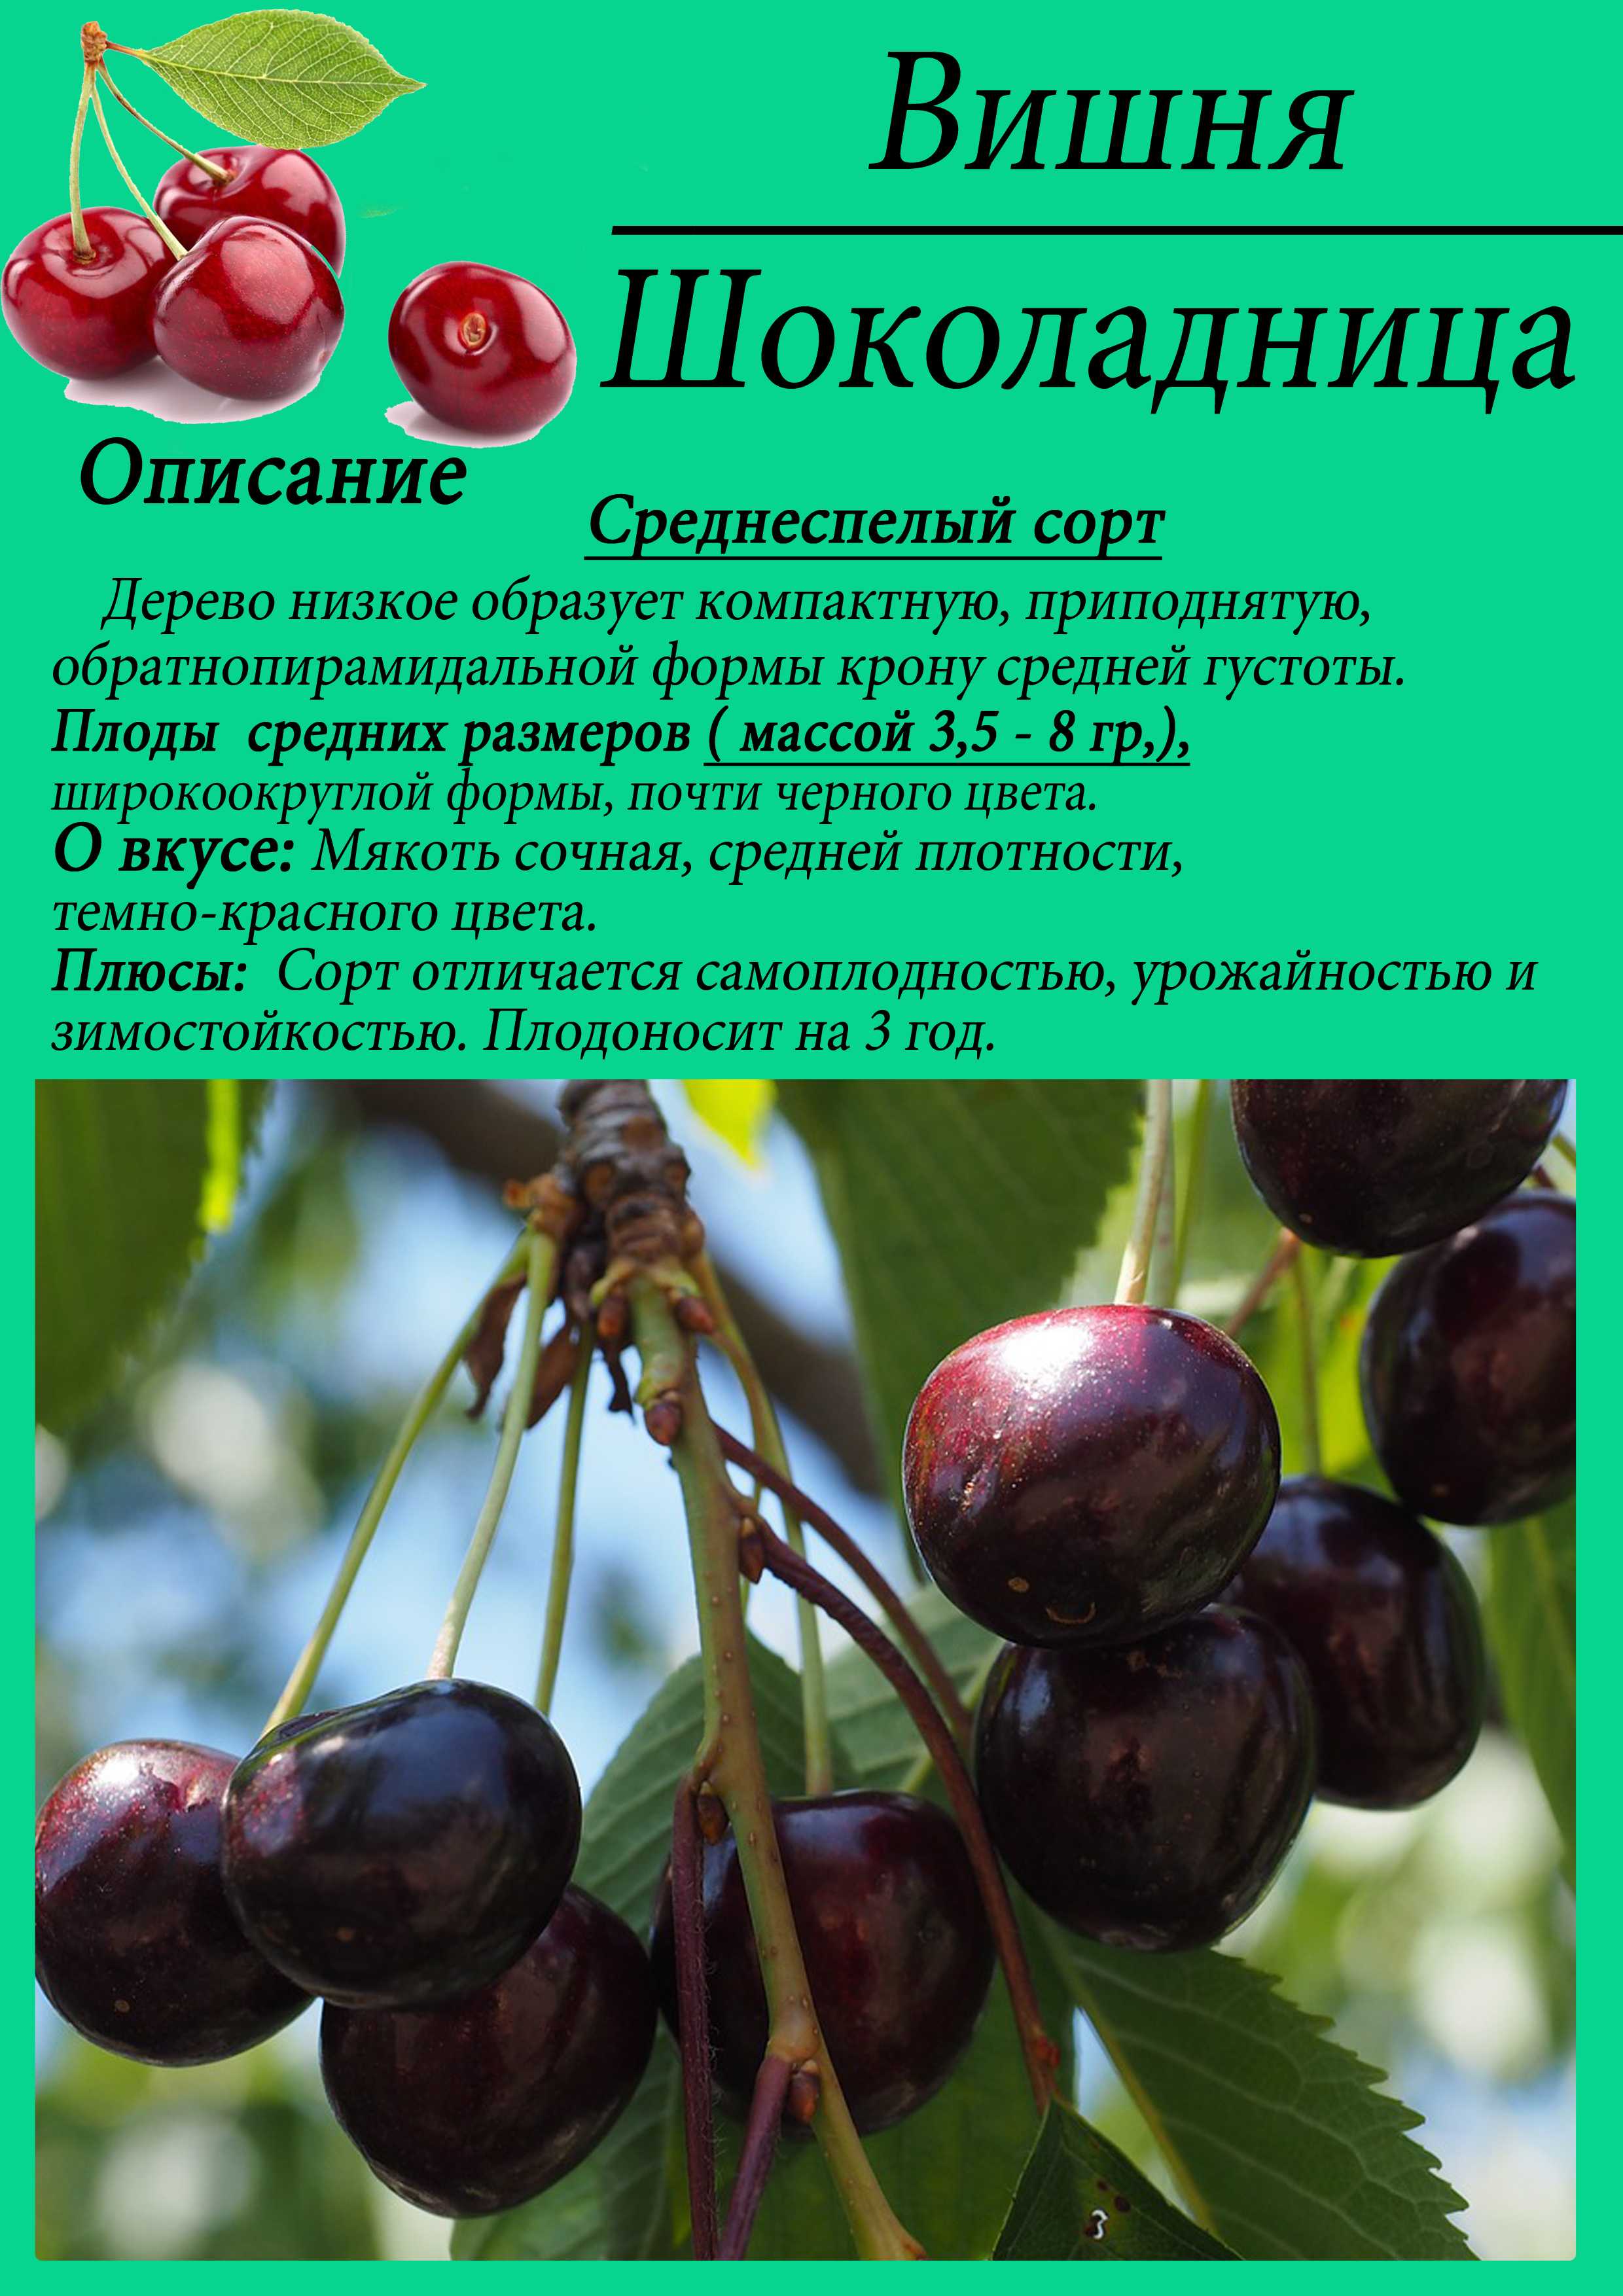 ✅ вишня морель — описание сорта, фото, отзывы садоводов - cvetochki-penza.ru